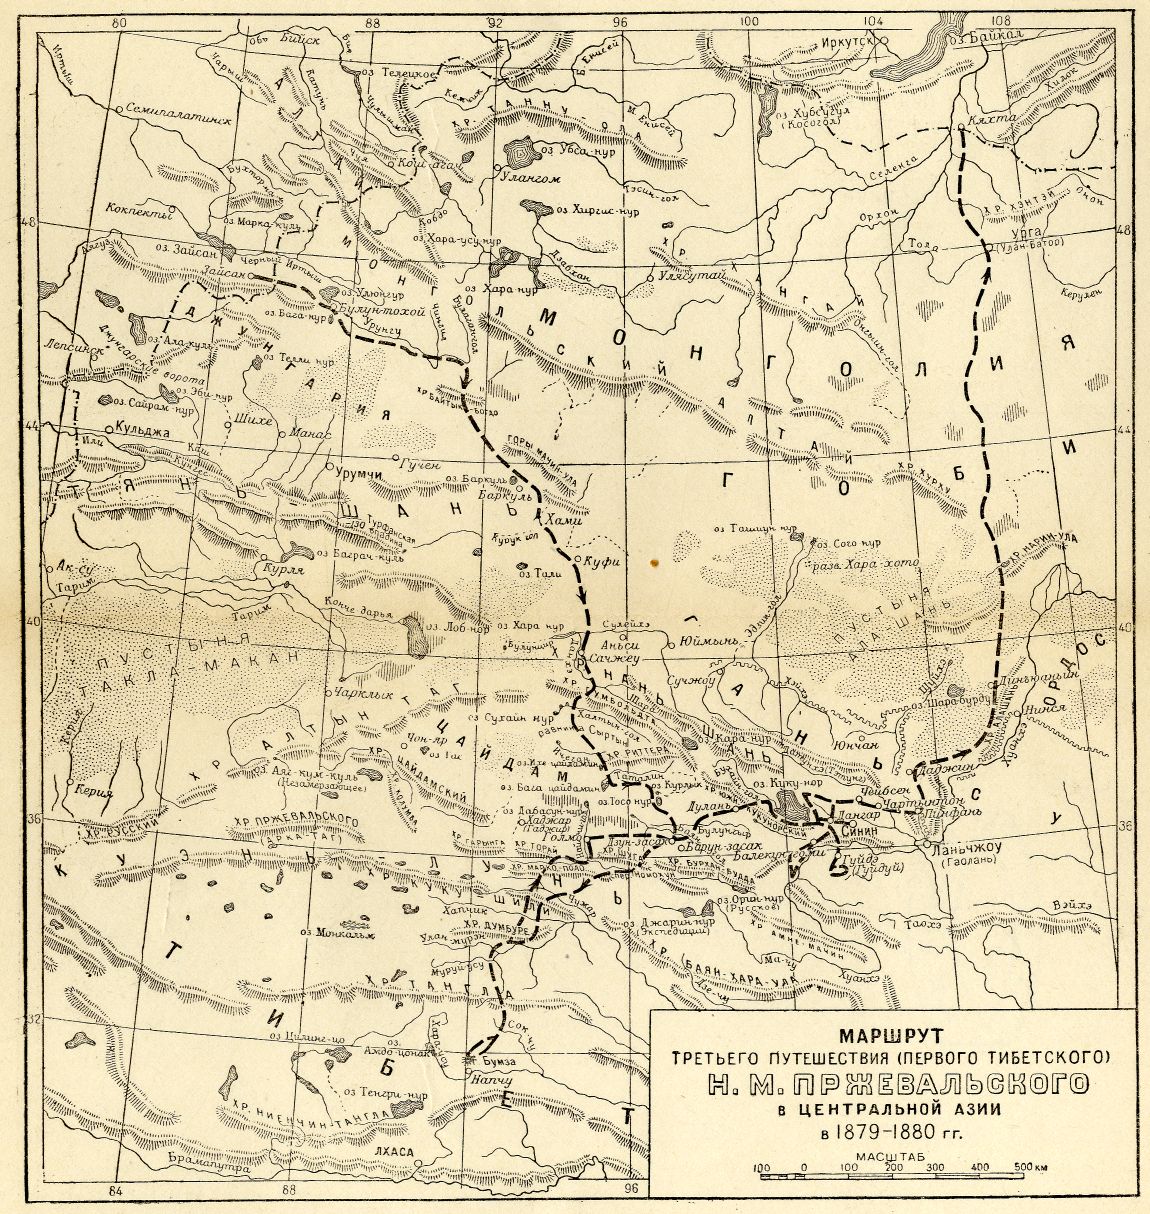 Пржевальского путешествия 1870-1885